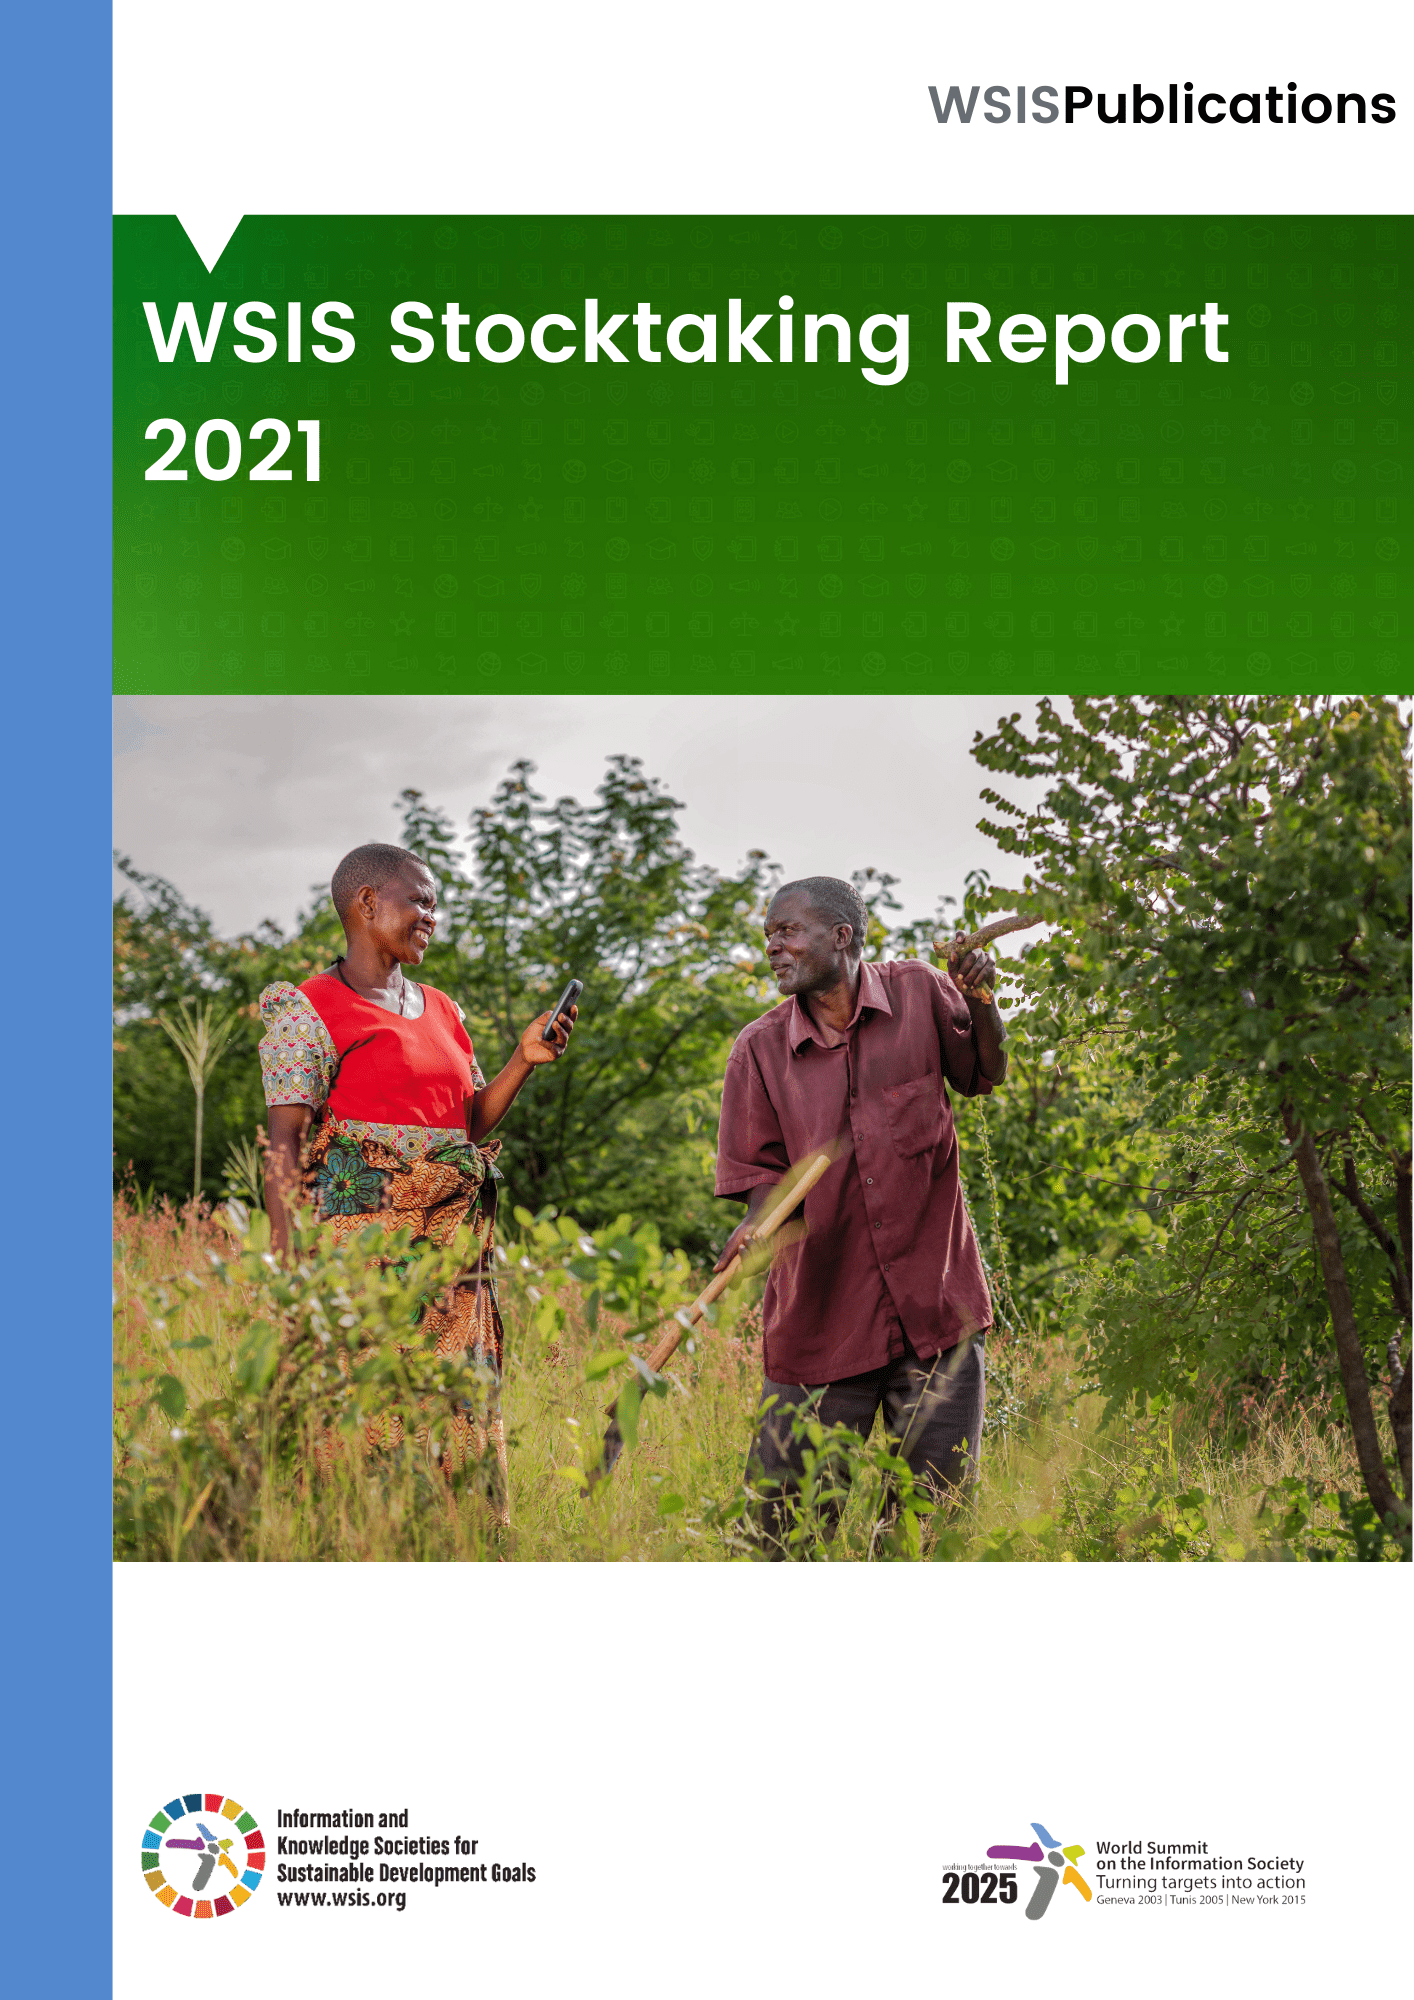 WSIS Stocktaking Report 2021